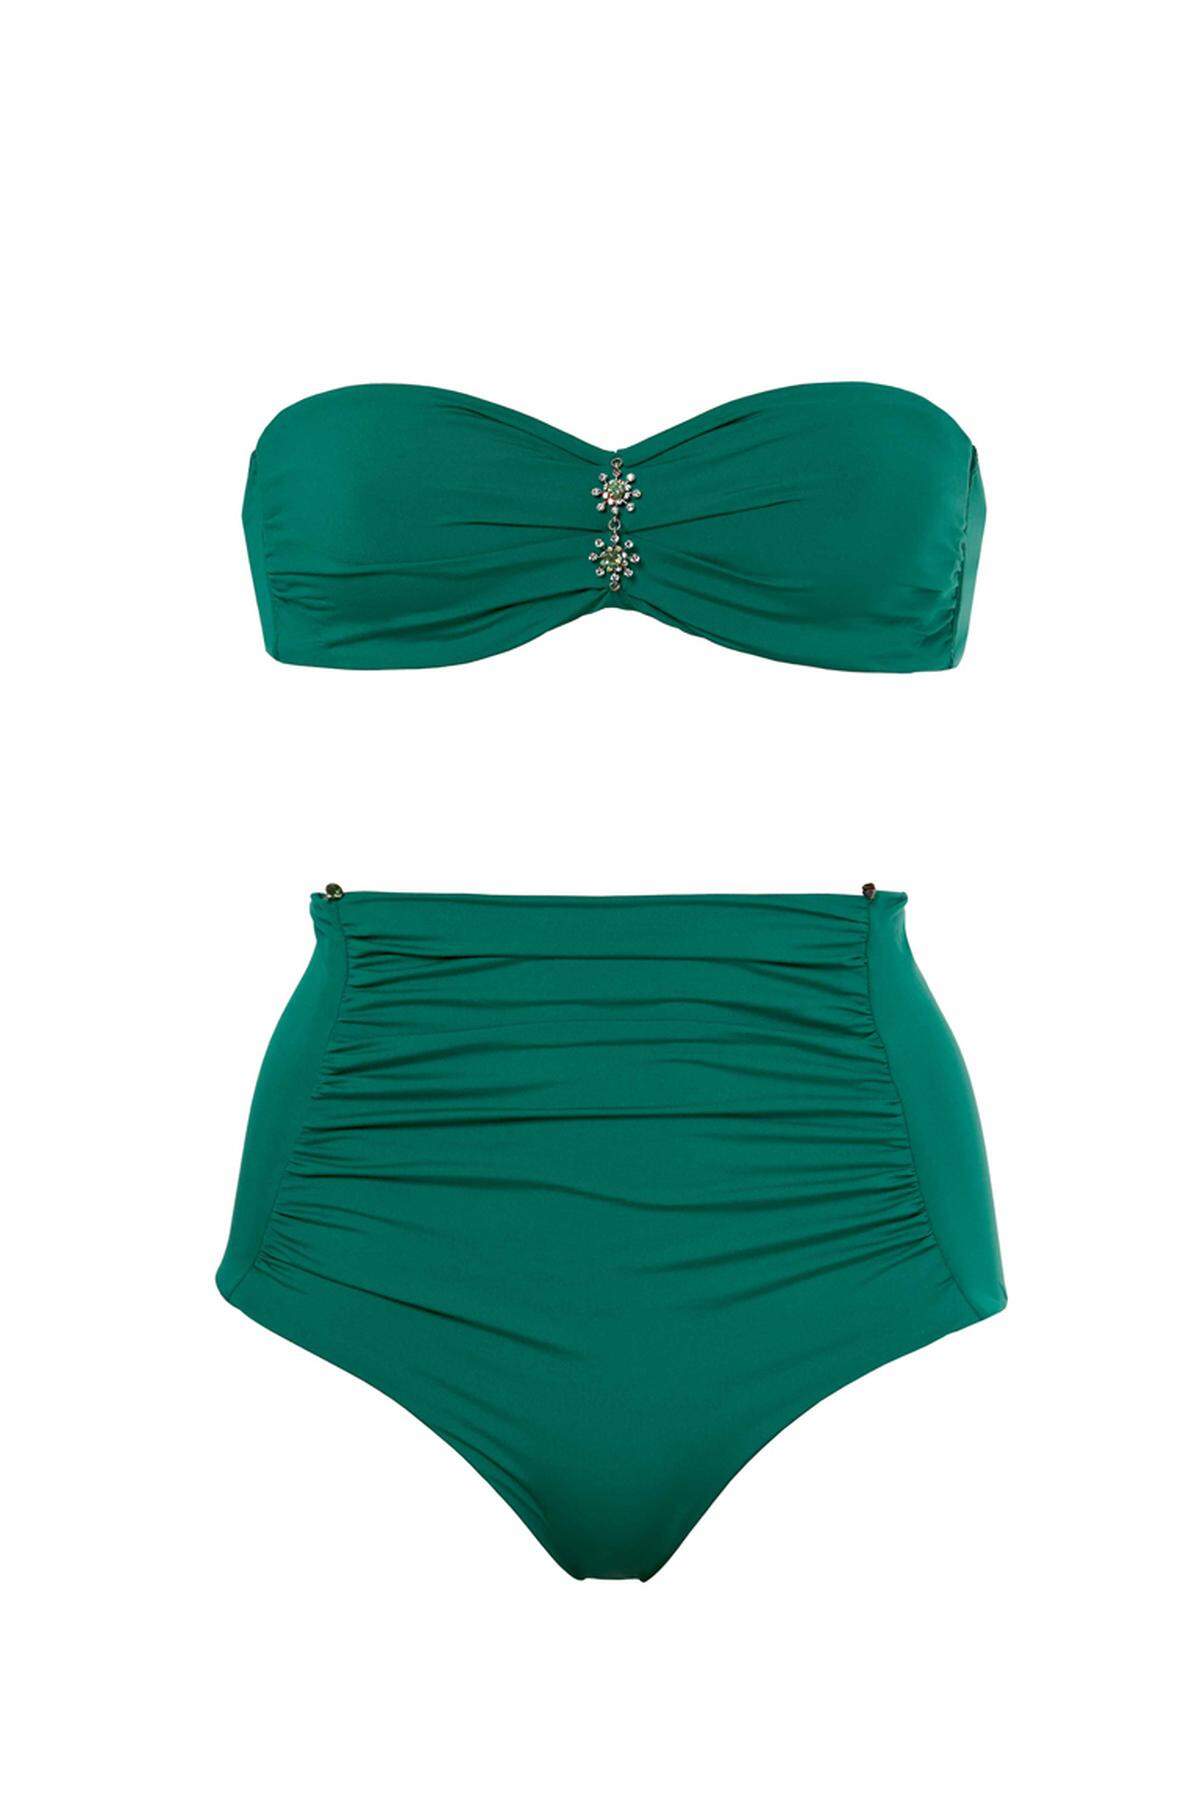 Seine Kurven richtig in Szene setzen kann man auch mit diesem grünen Bikini von Calzedonia.